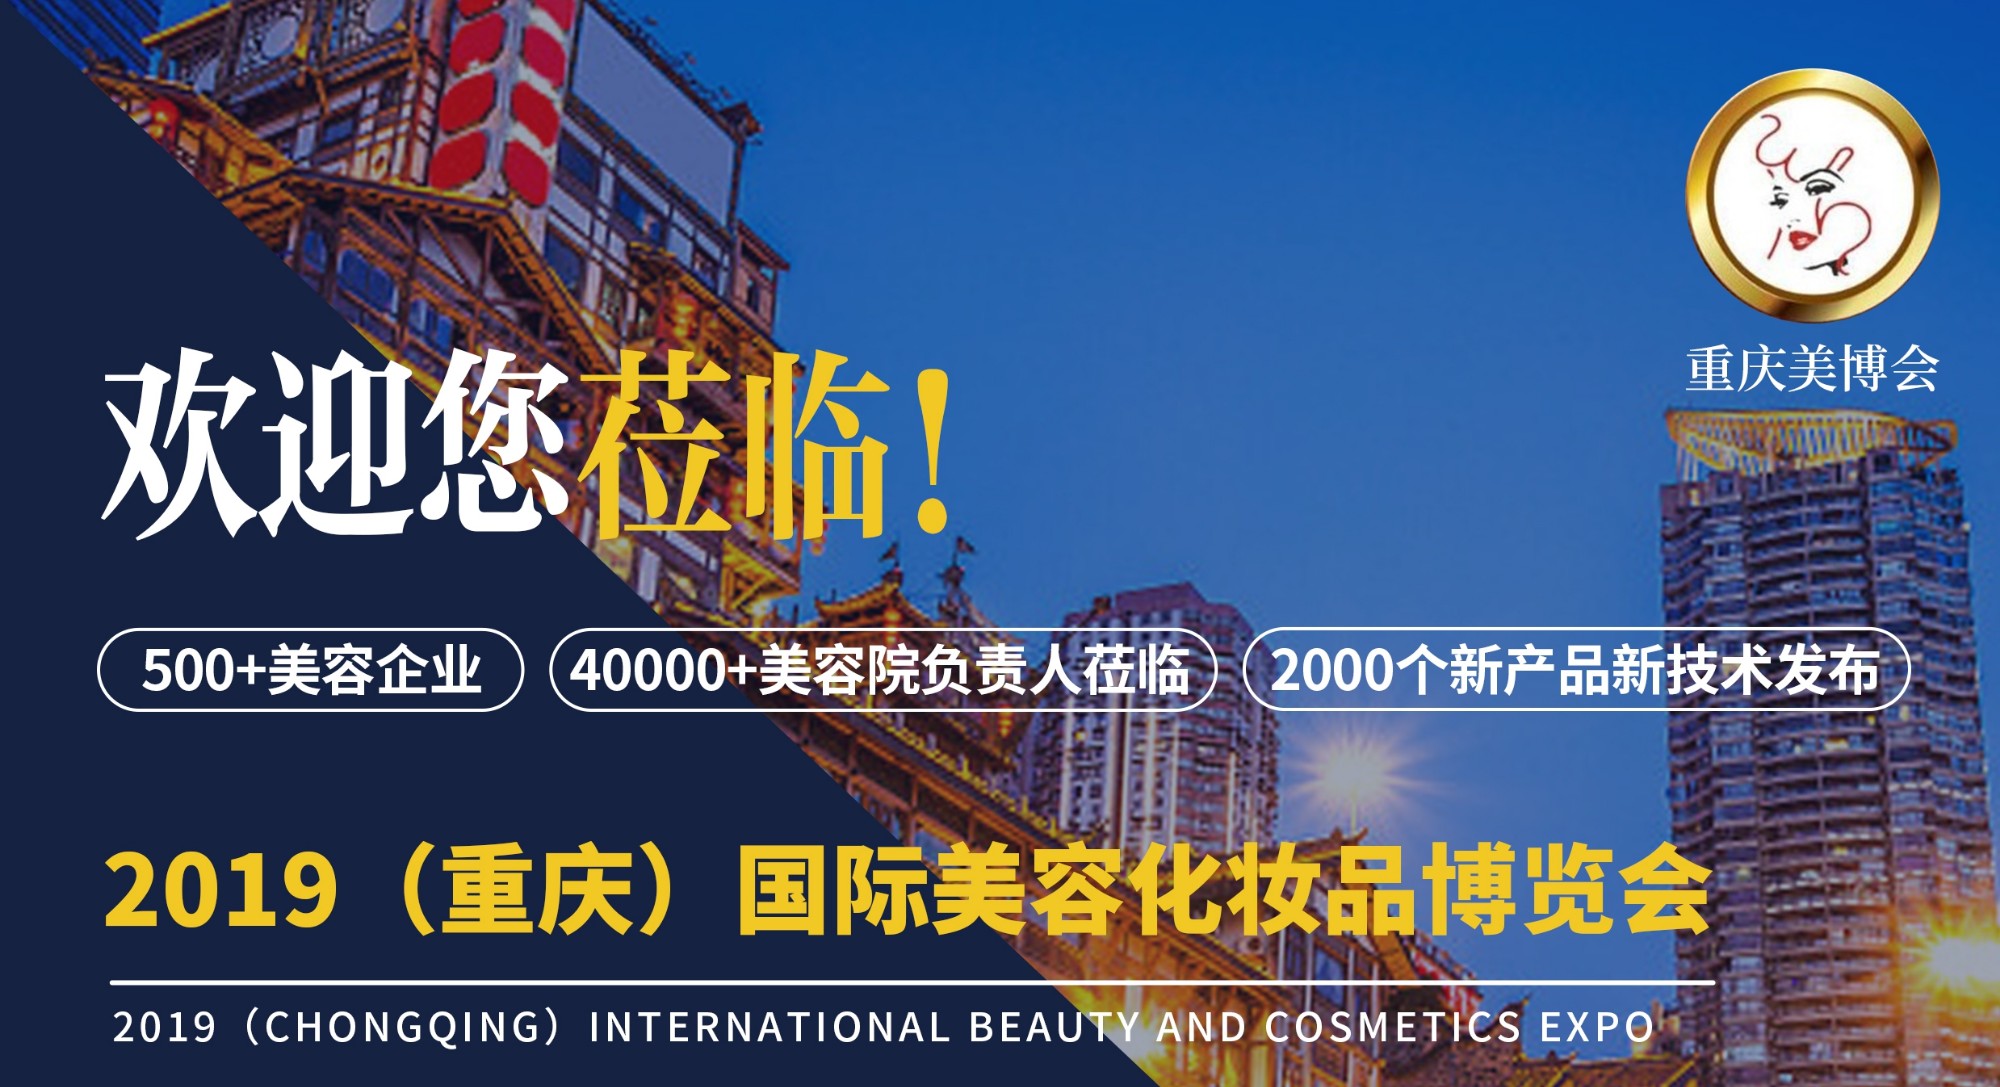 重庆国际美容化妆品博览会——参观攻略